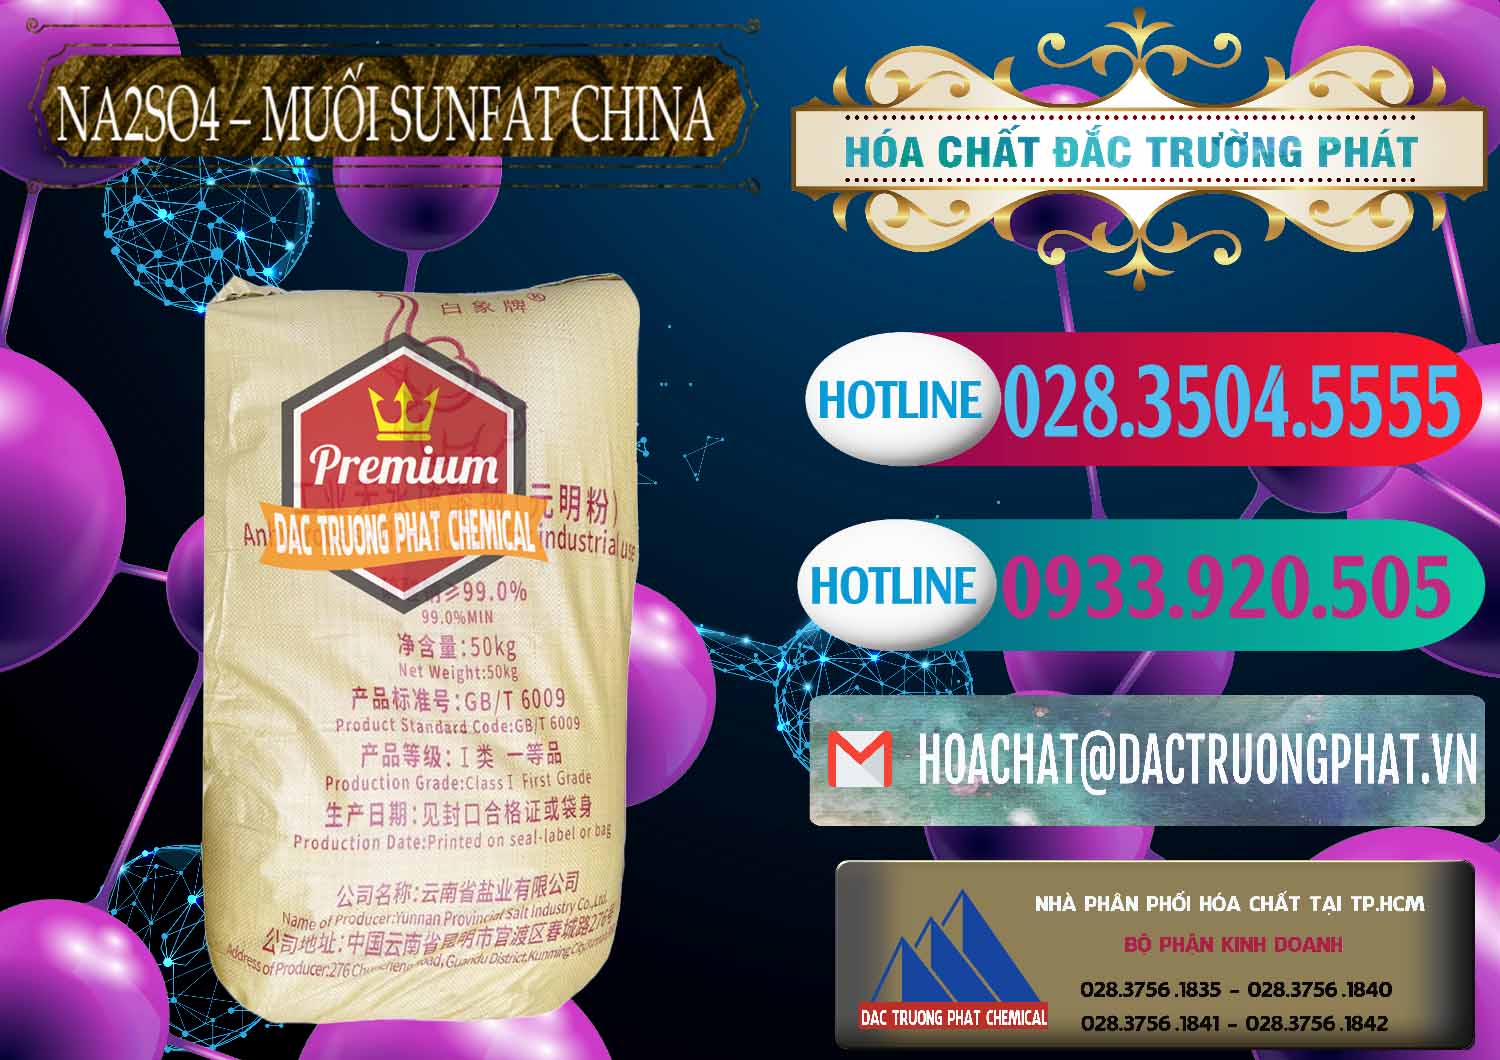 Nơi chuyên bán & cung cấp Sodium Sulphate - Muối Sunfat Na2SO4 Logo Con Voi Trung Quốc China - 0409 - Cty chuyên cung cấp & nhập khẩu hóa chất tại TP.HCM - truongphat.vn